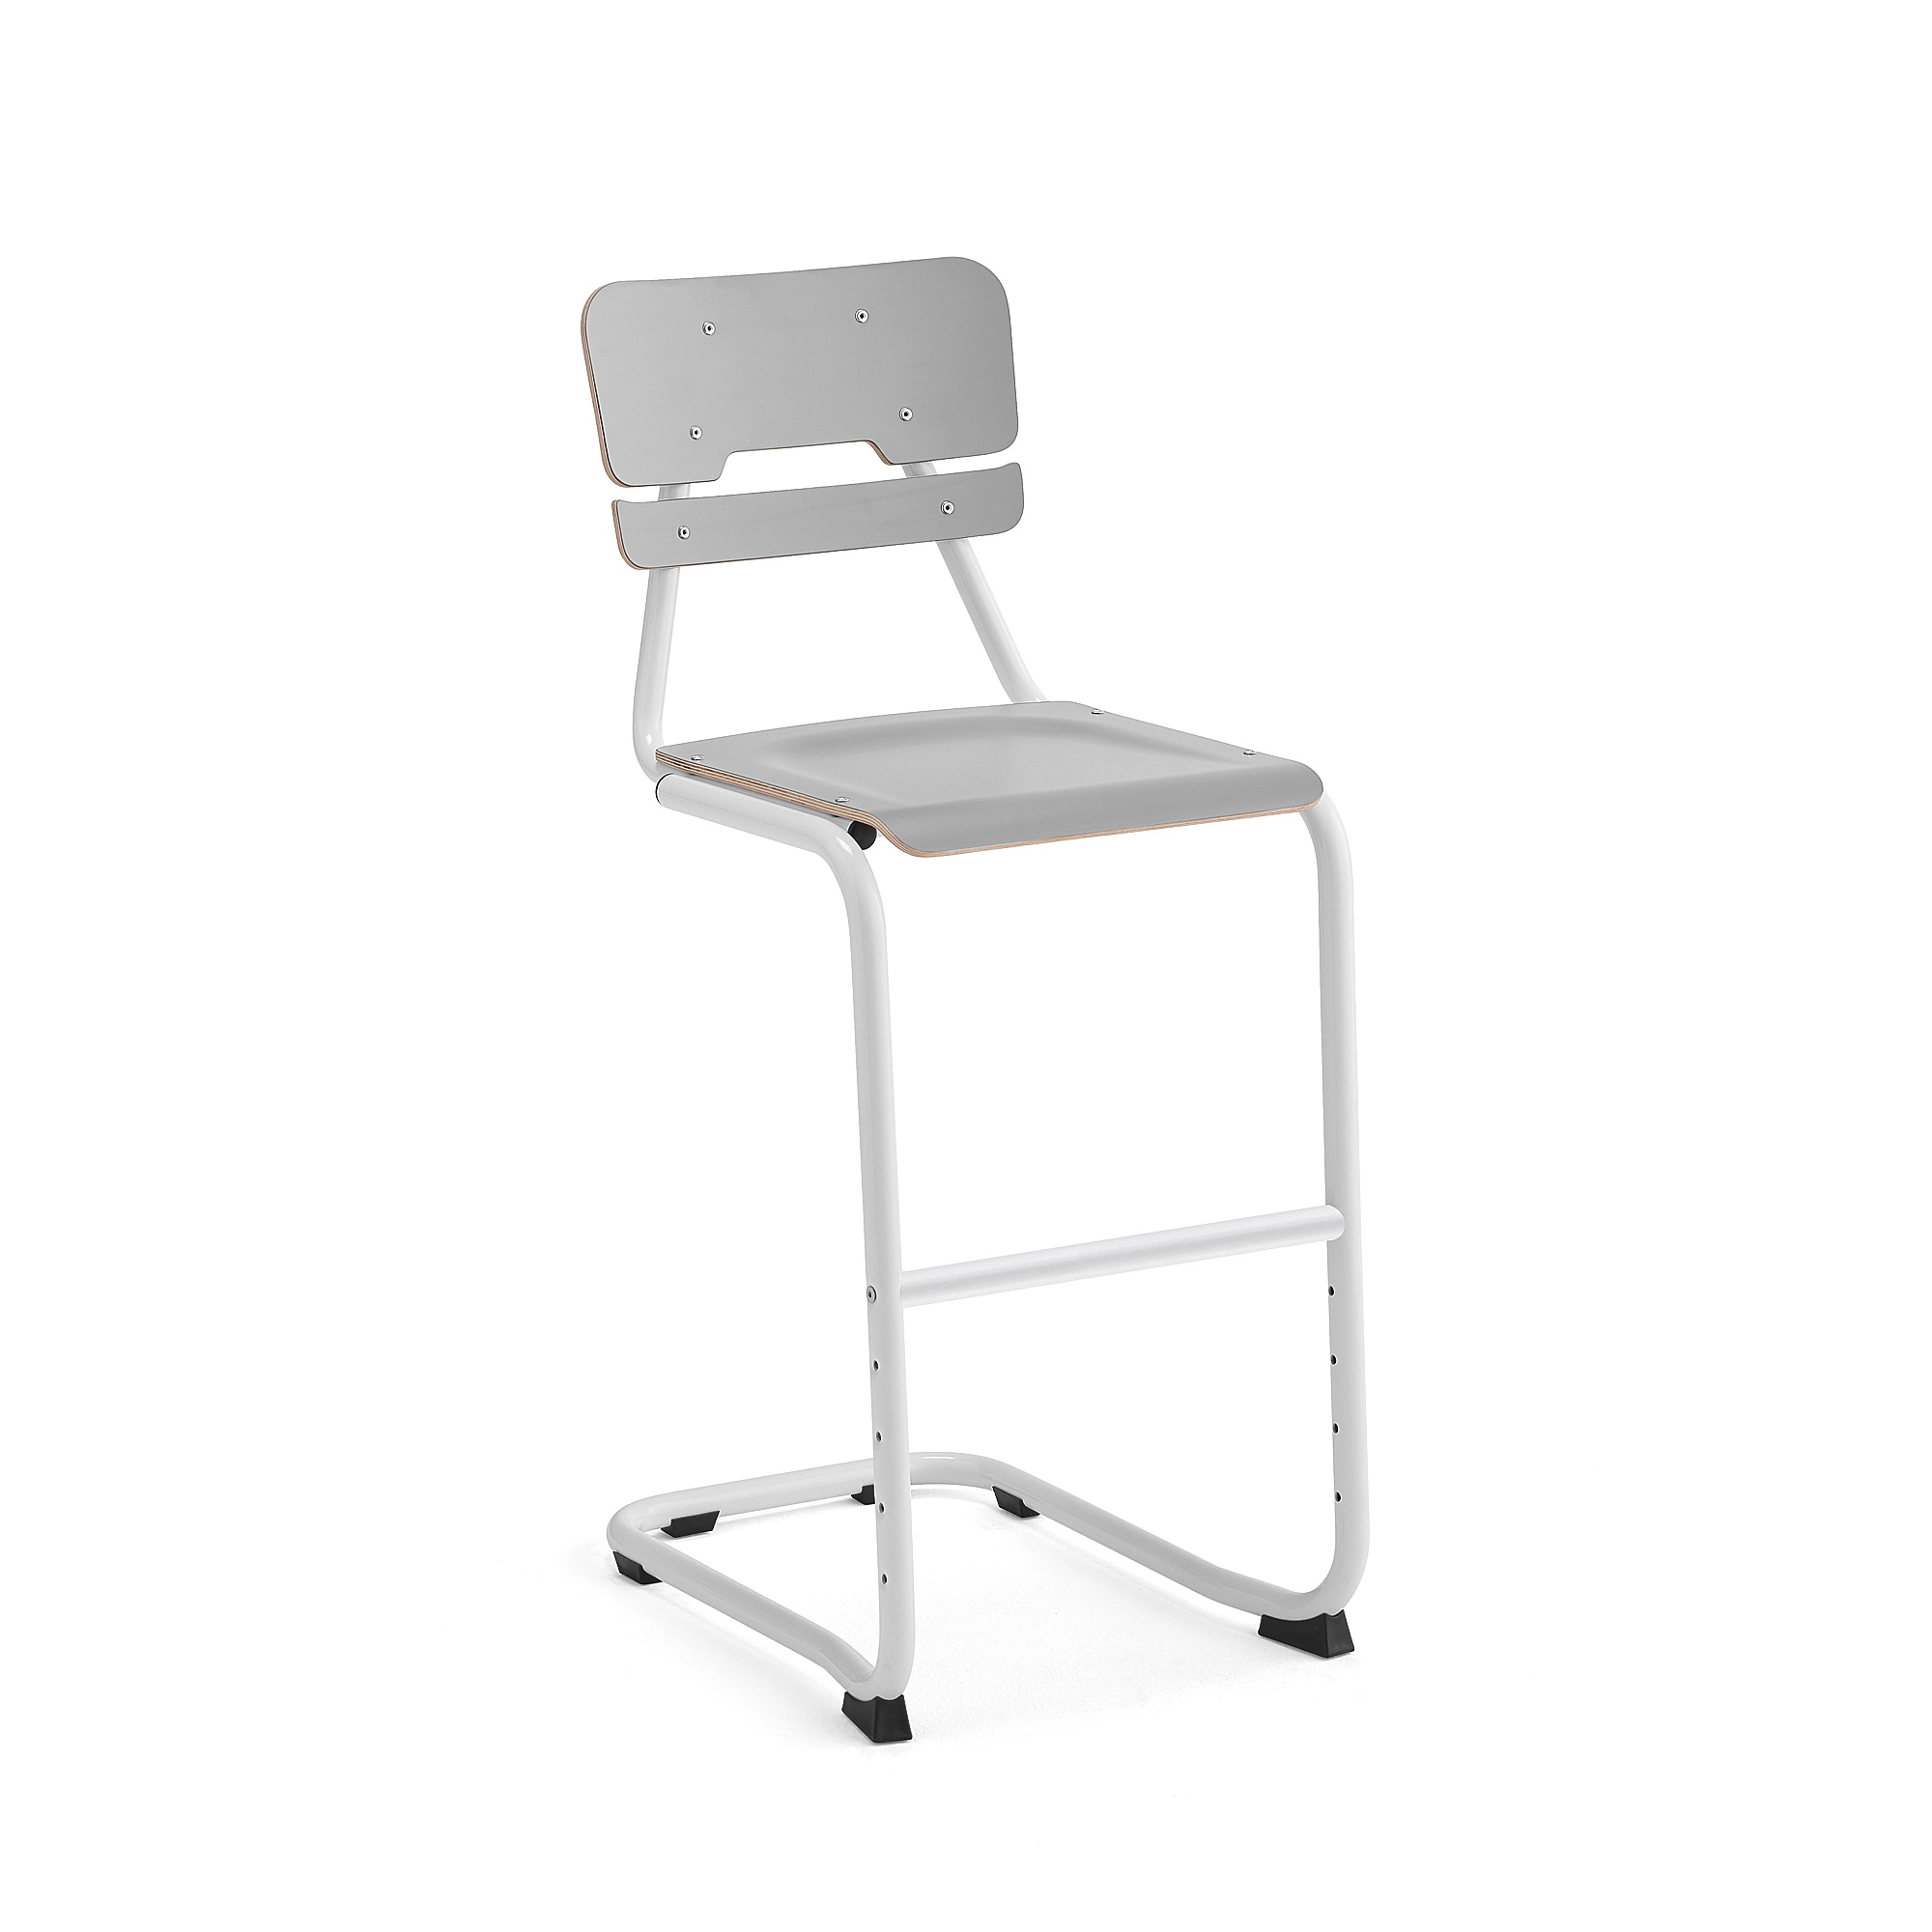 Školní židle LEGERE I, výška 650 mm, bílá, šedá